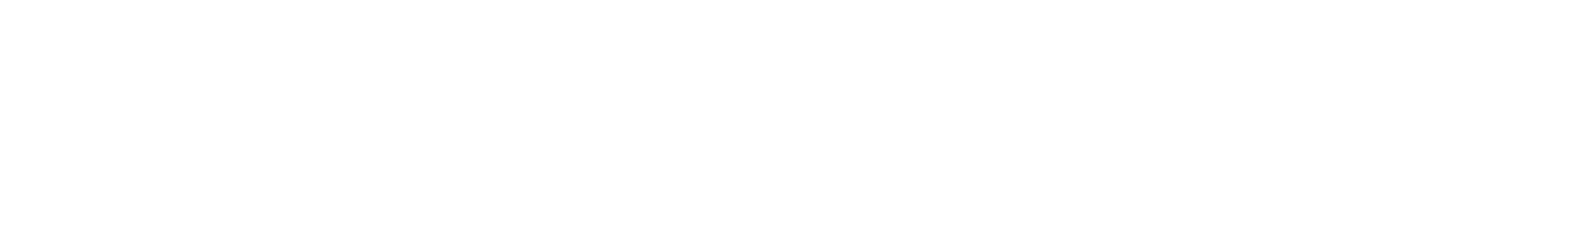 Garmin Logo groß für dunkle Hintergründe (transparentes PNG)